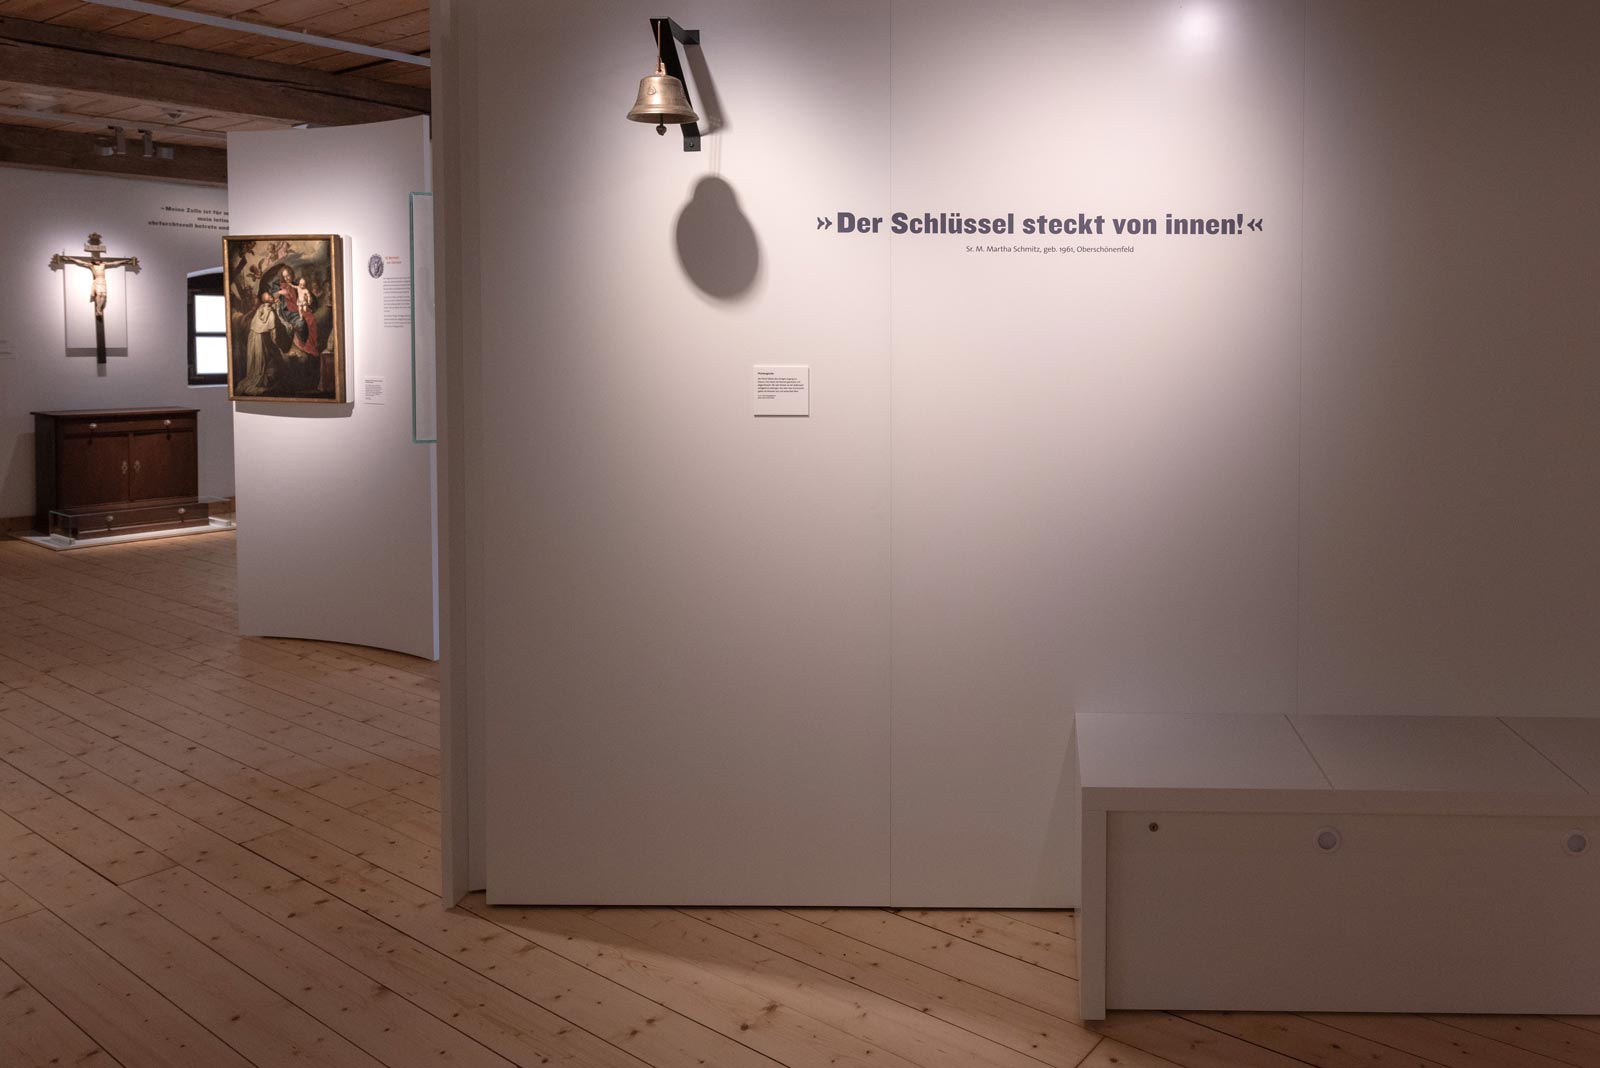 Das Referenzbild für Ausstellungsgestaltung aus der Dauerausstellung Tradition und Umbruch zeigt eine Rauminszenierung.